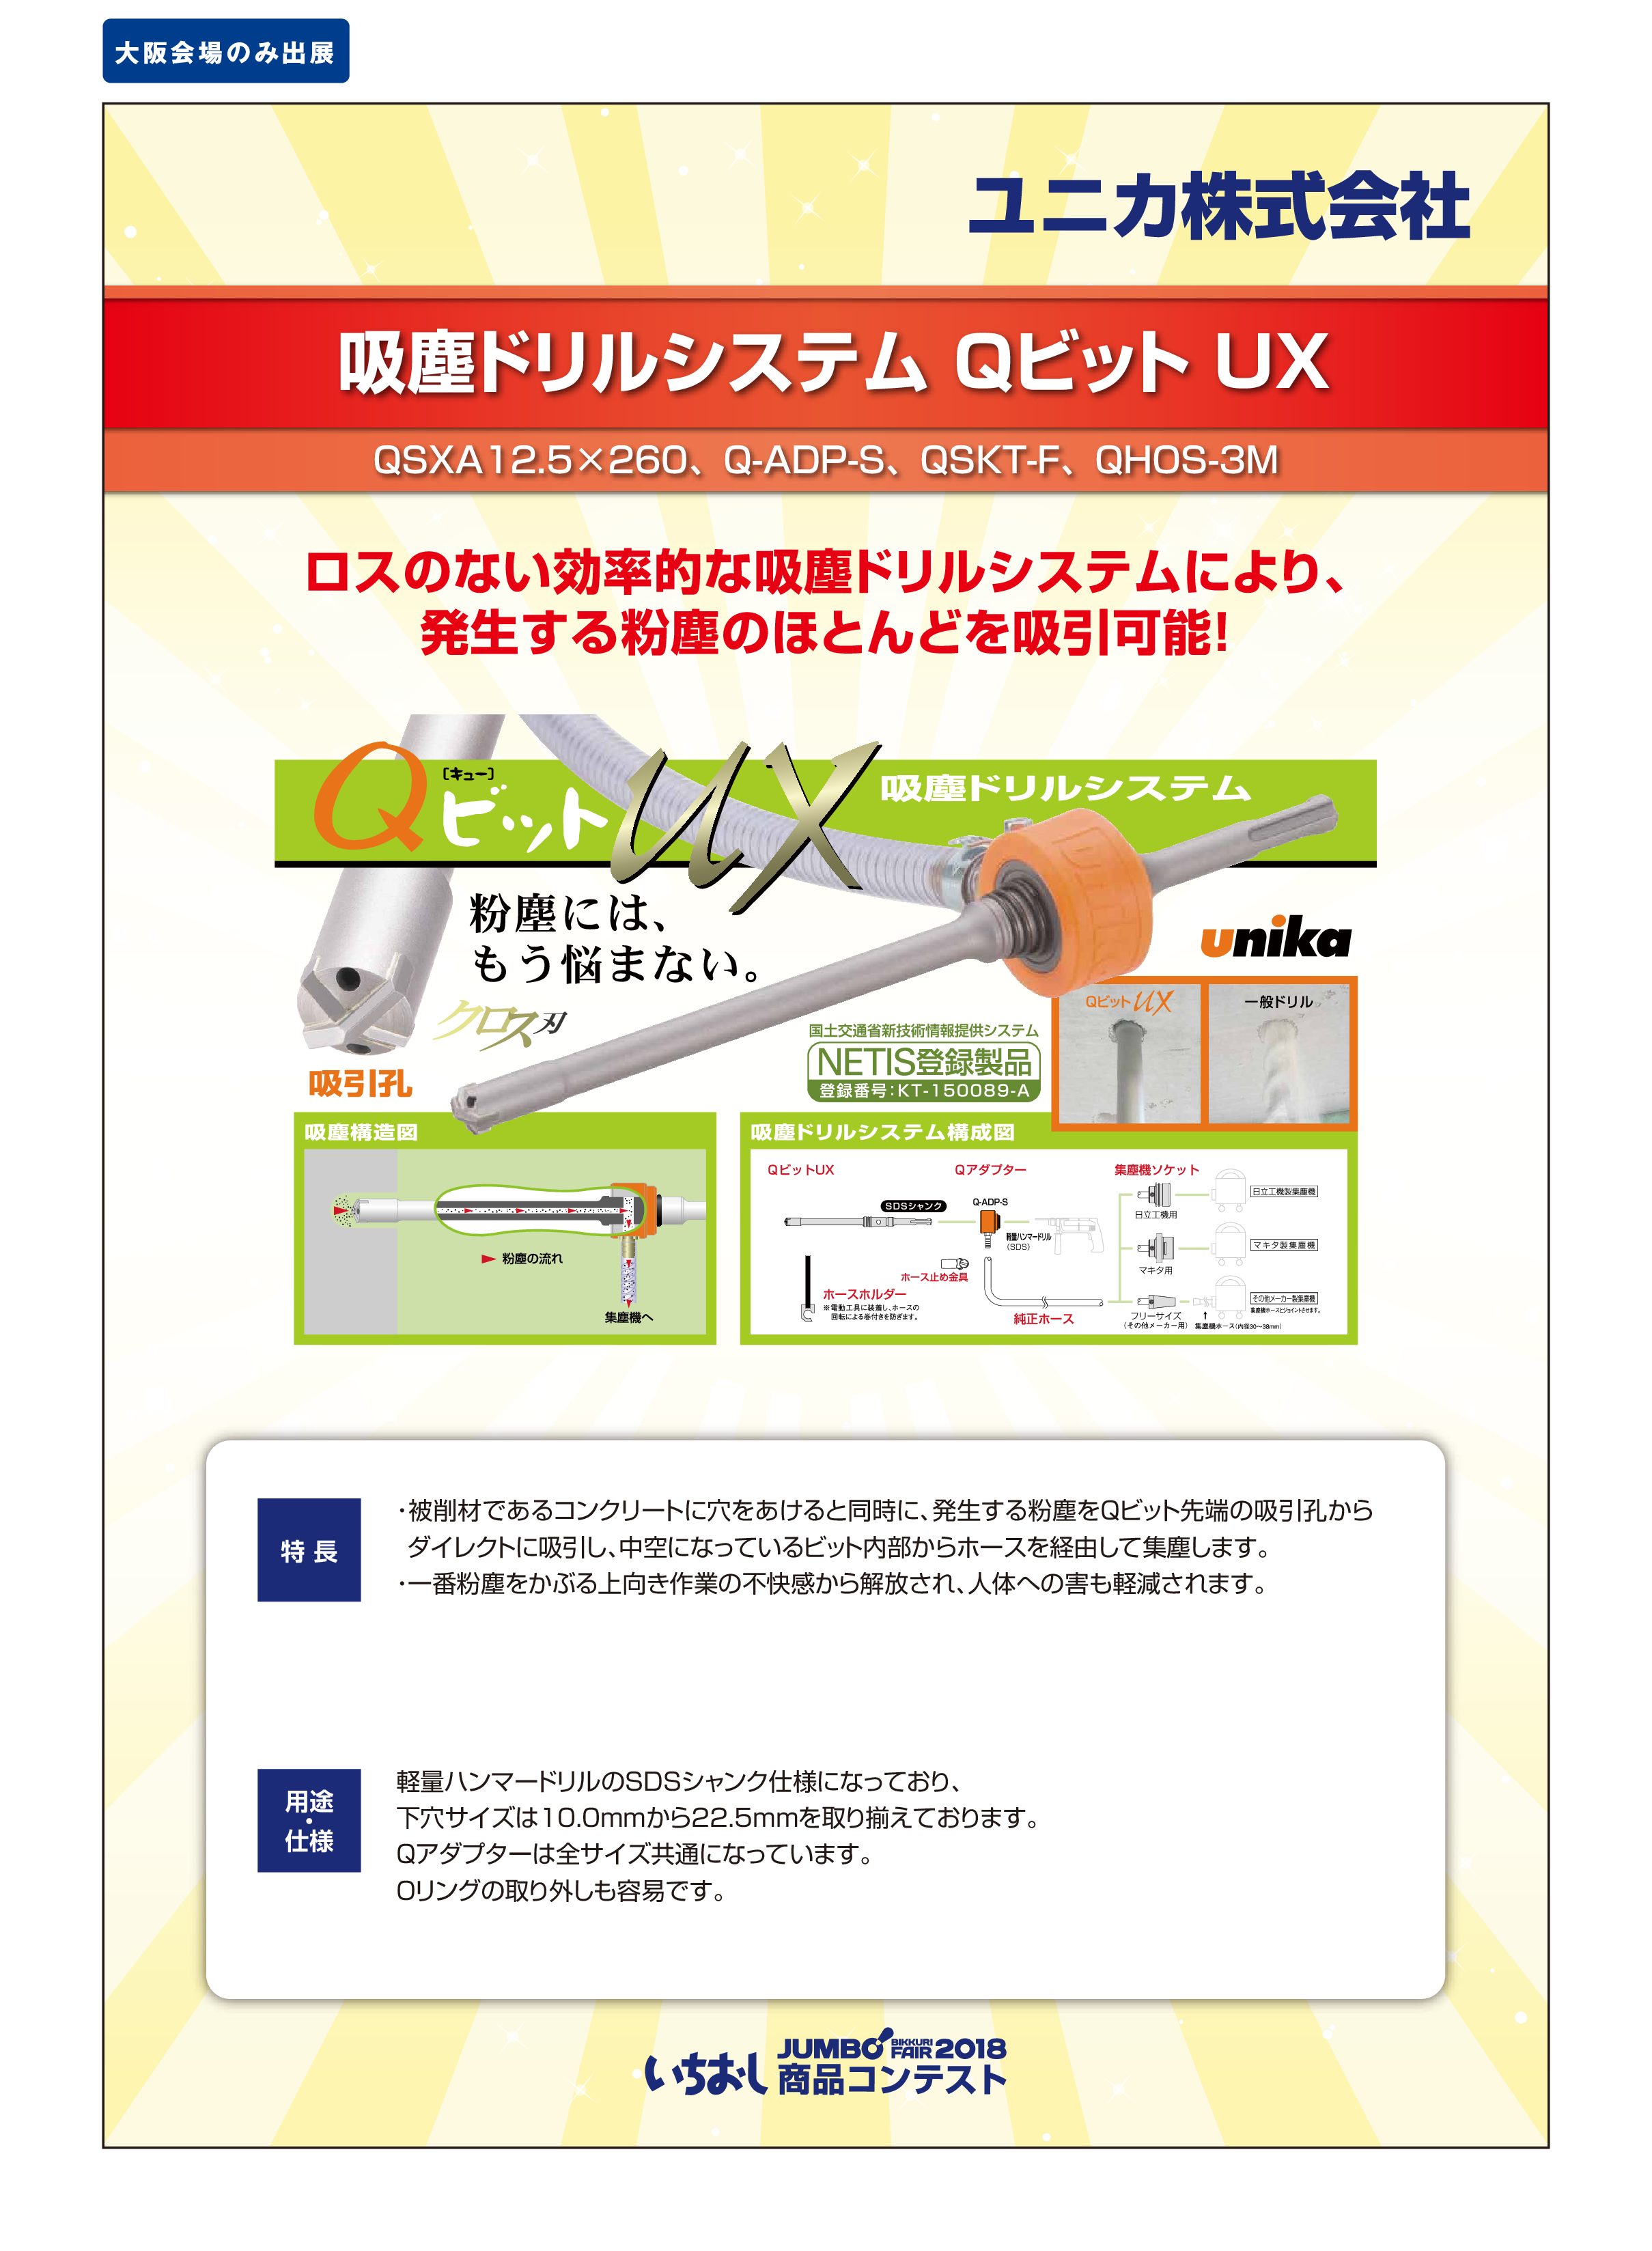 「吸塵ドリルシステム Qビット UX」ユニカ株式会社の画像